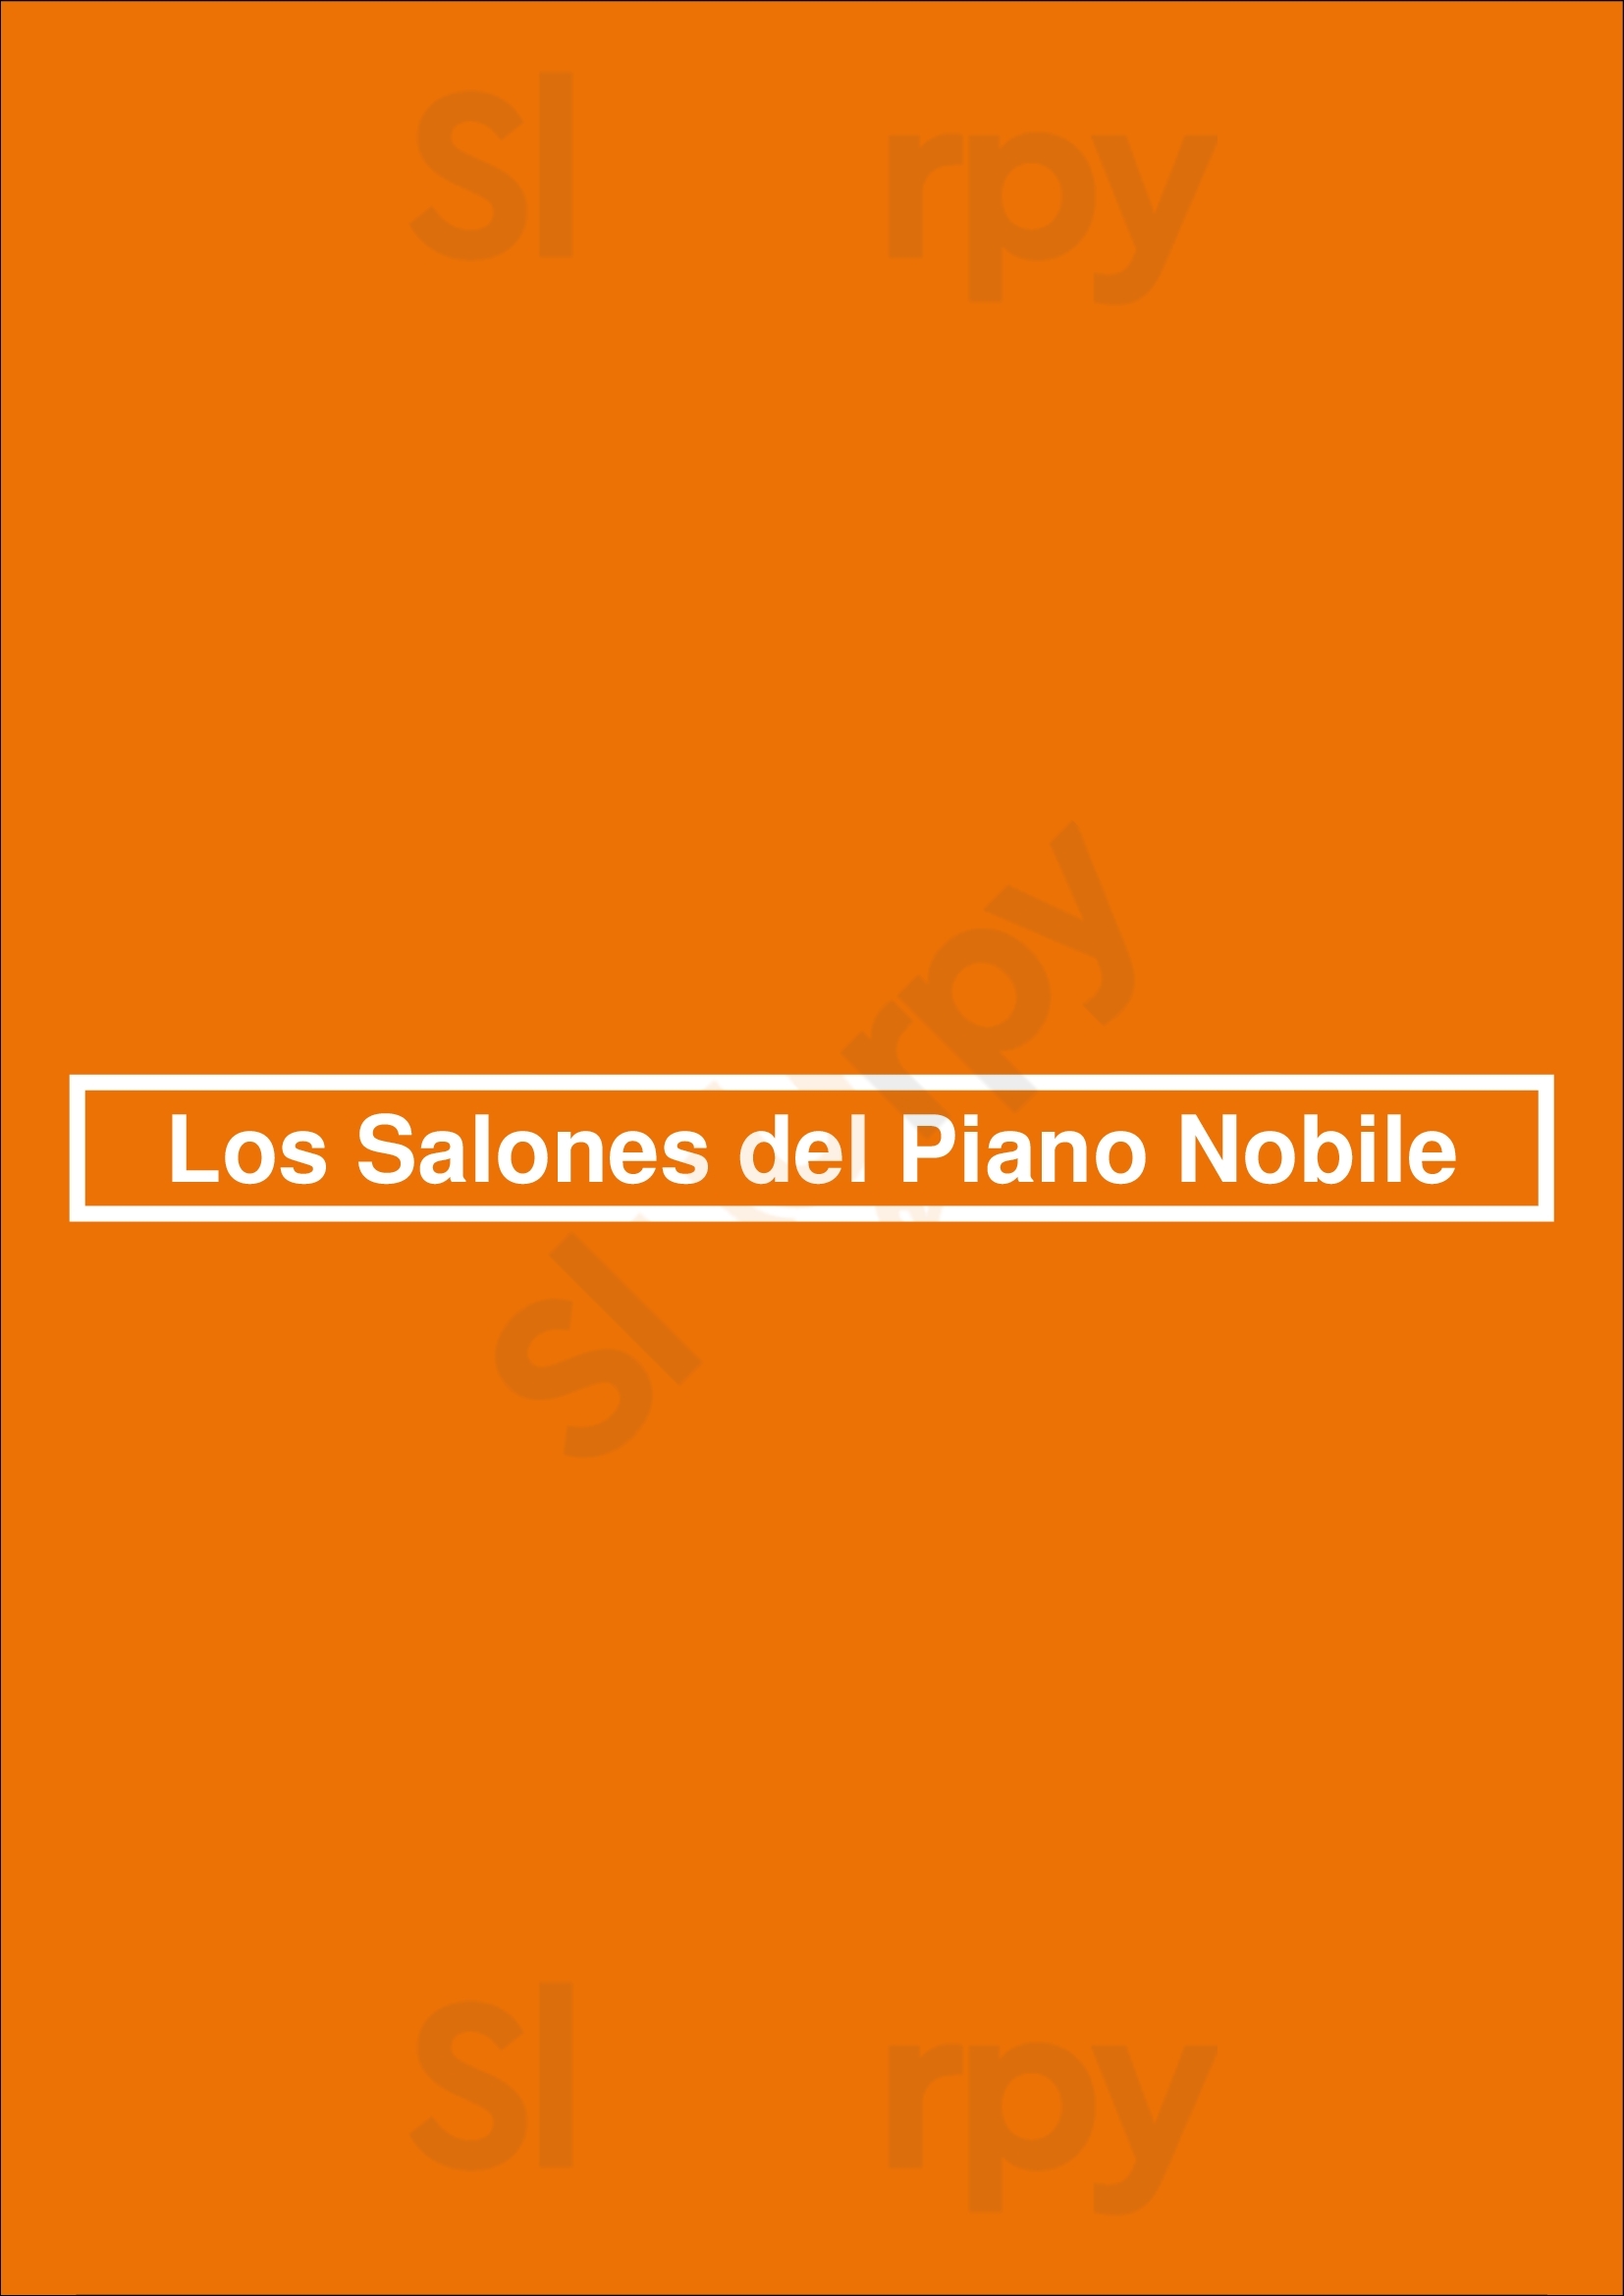 Los Salones Del Piano Nobile Buenos Aires Menu - 1